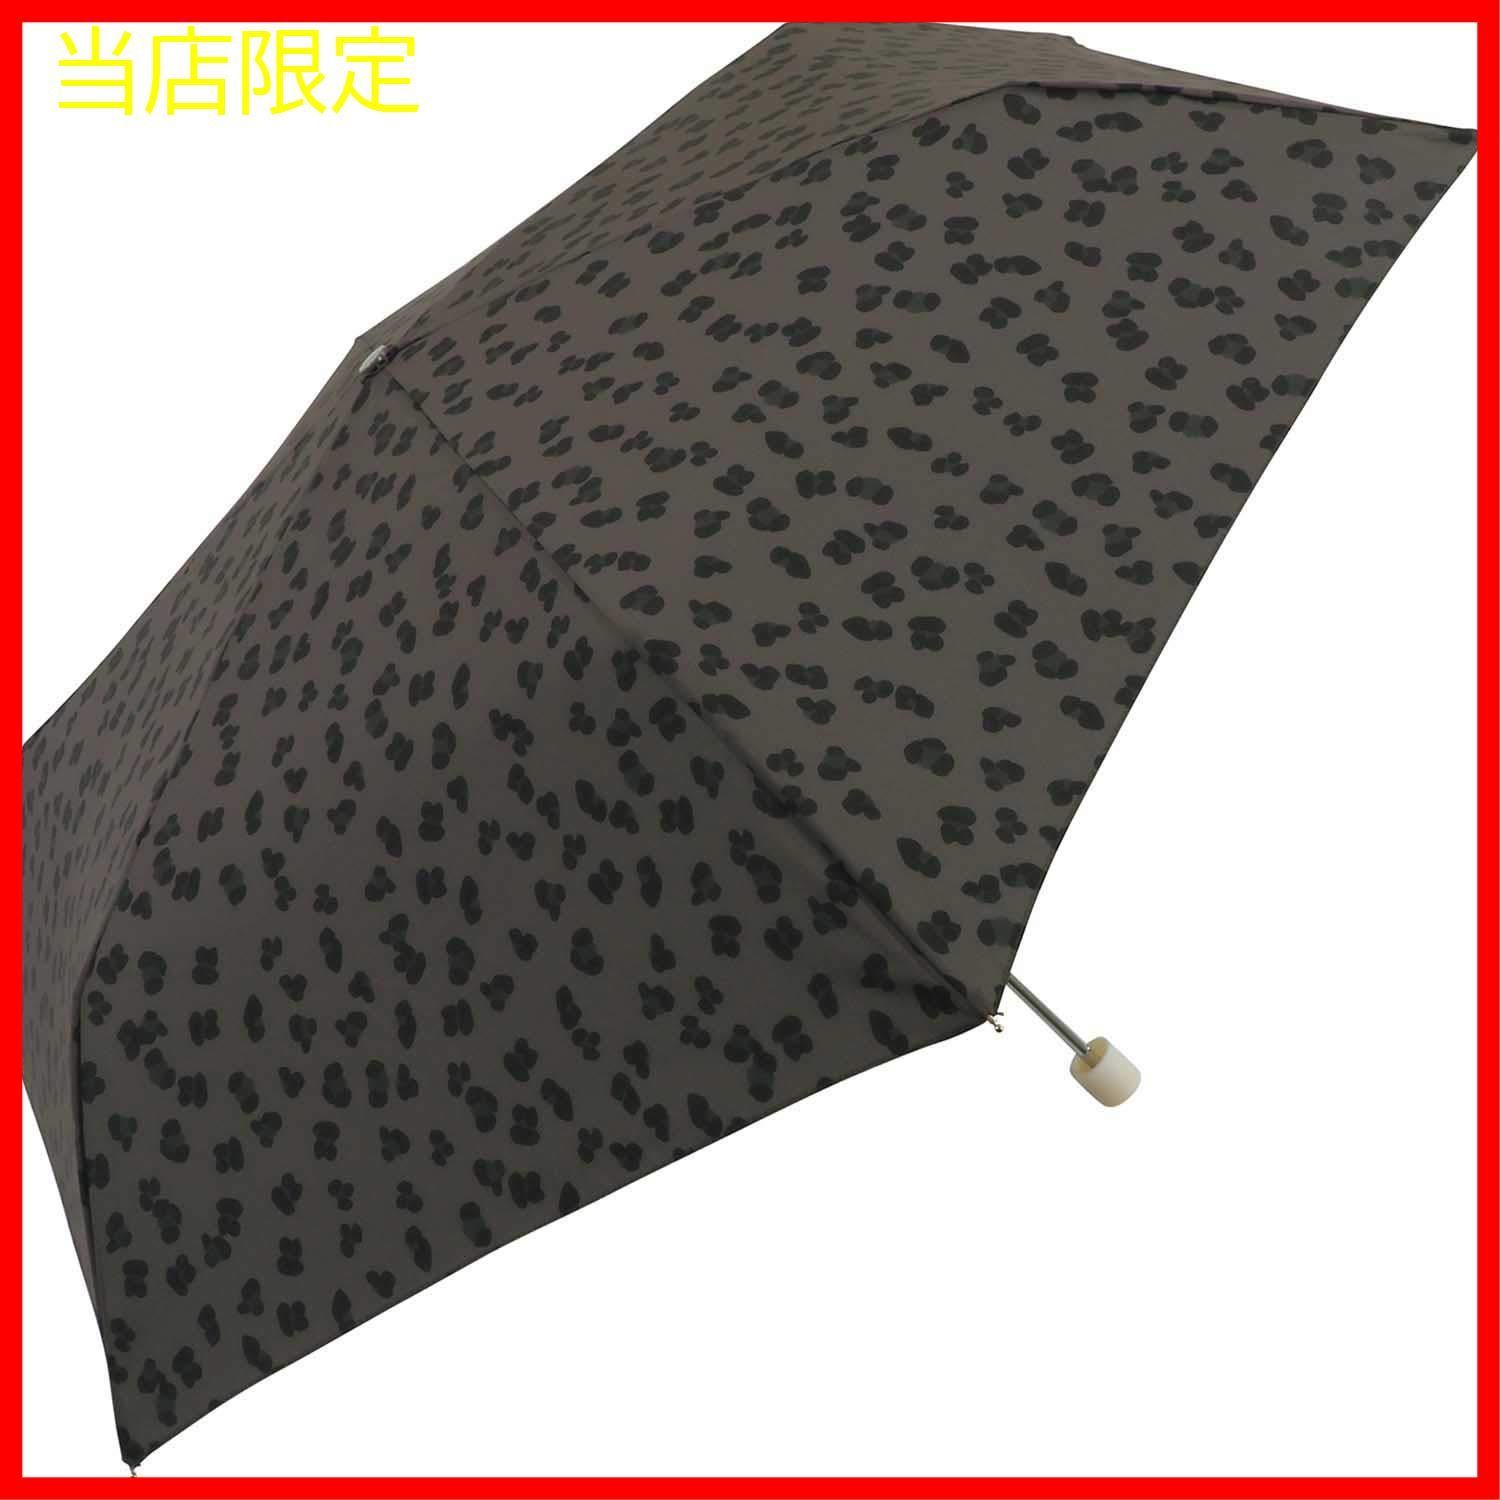 当店限定 雨傘 レオパードmini ブラック 折りたたみ傘 Wpc. レディース タカハナショップ メルカリ